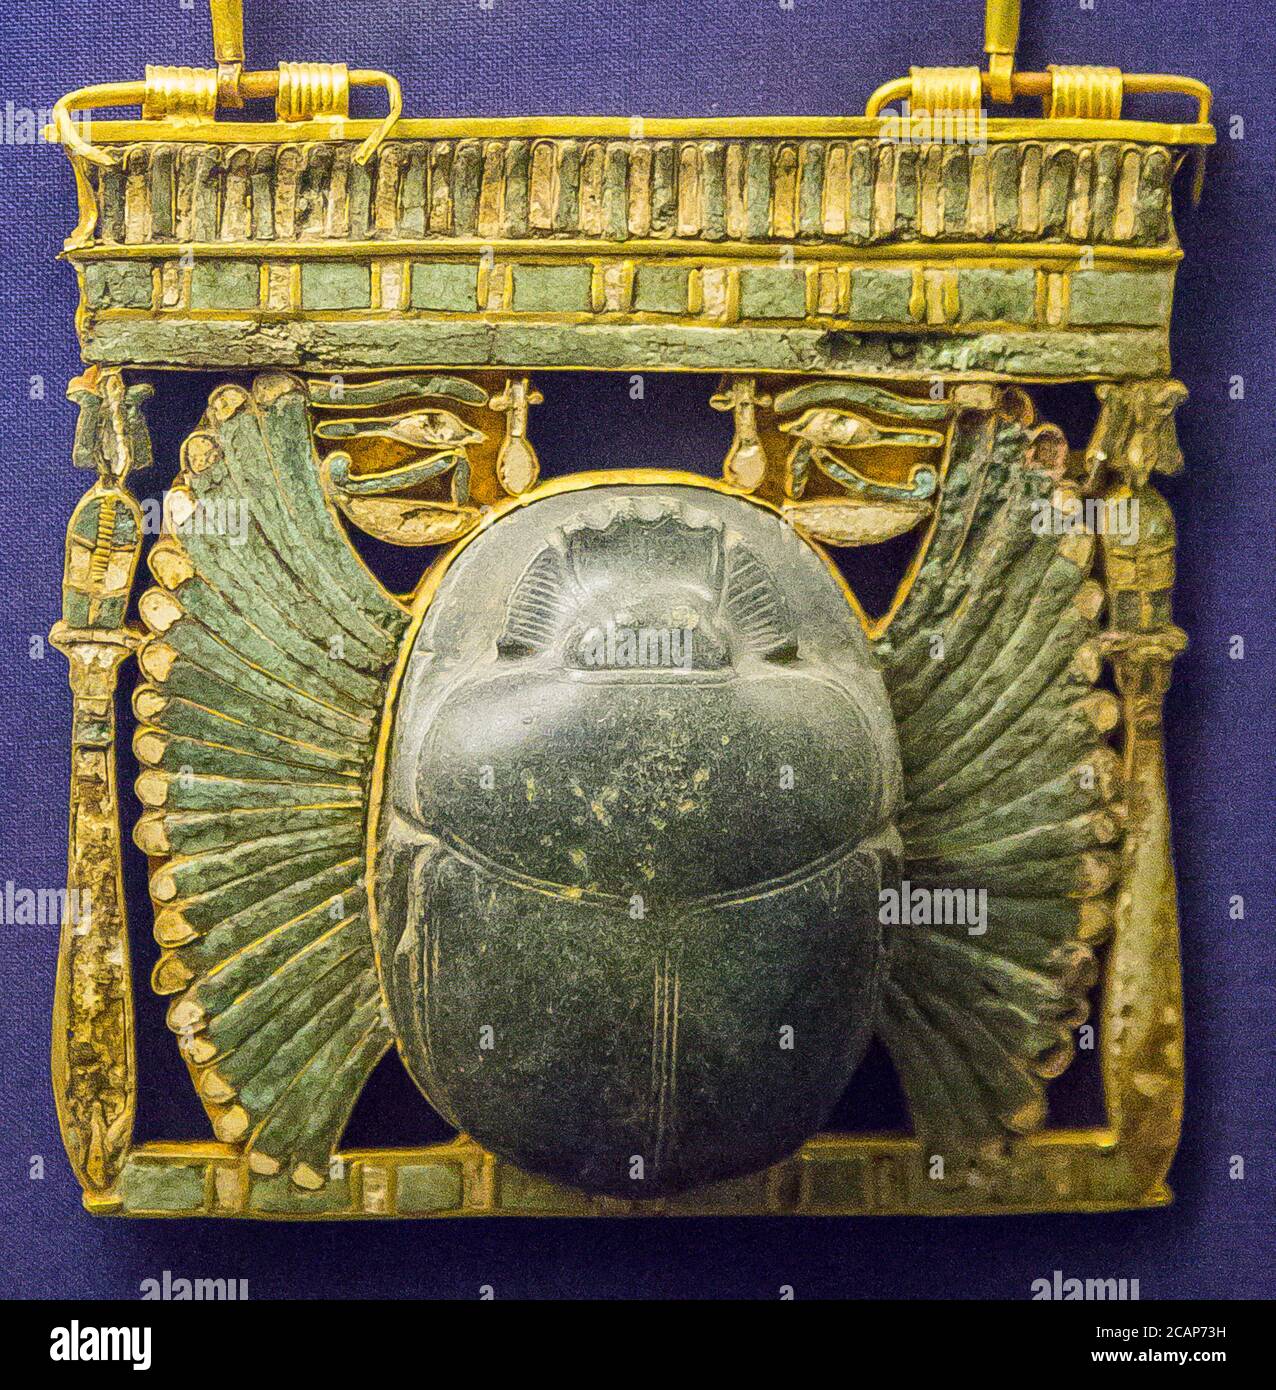 Egitto, Cairo, Museo Egizio, gioielli trovati nella necropoli reale di Tanis, sepoltura del re ceconq II: Pettorale sotto forma di pilone tempio. Foto Stock